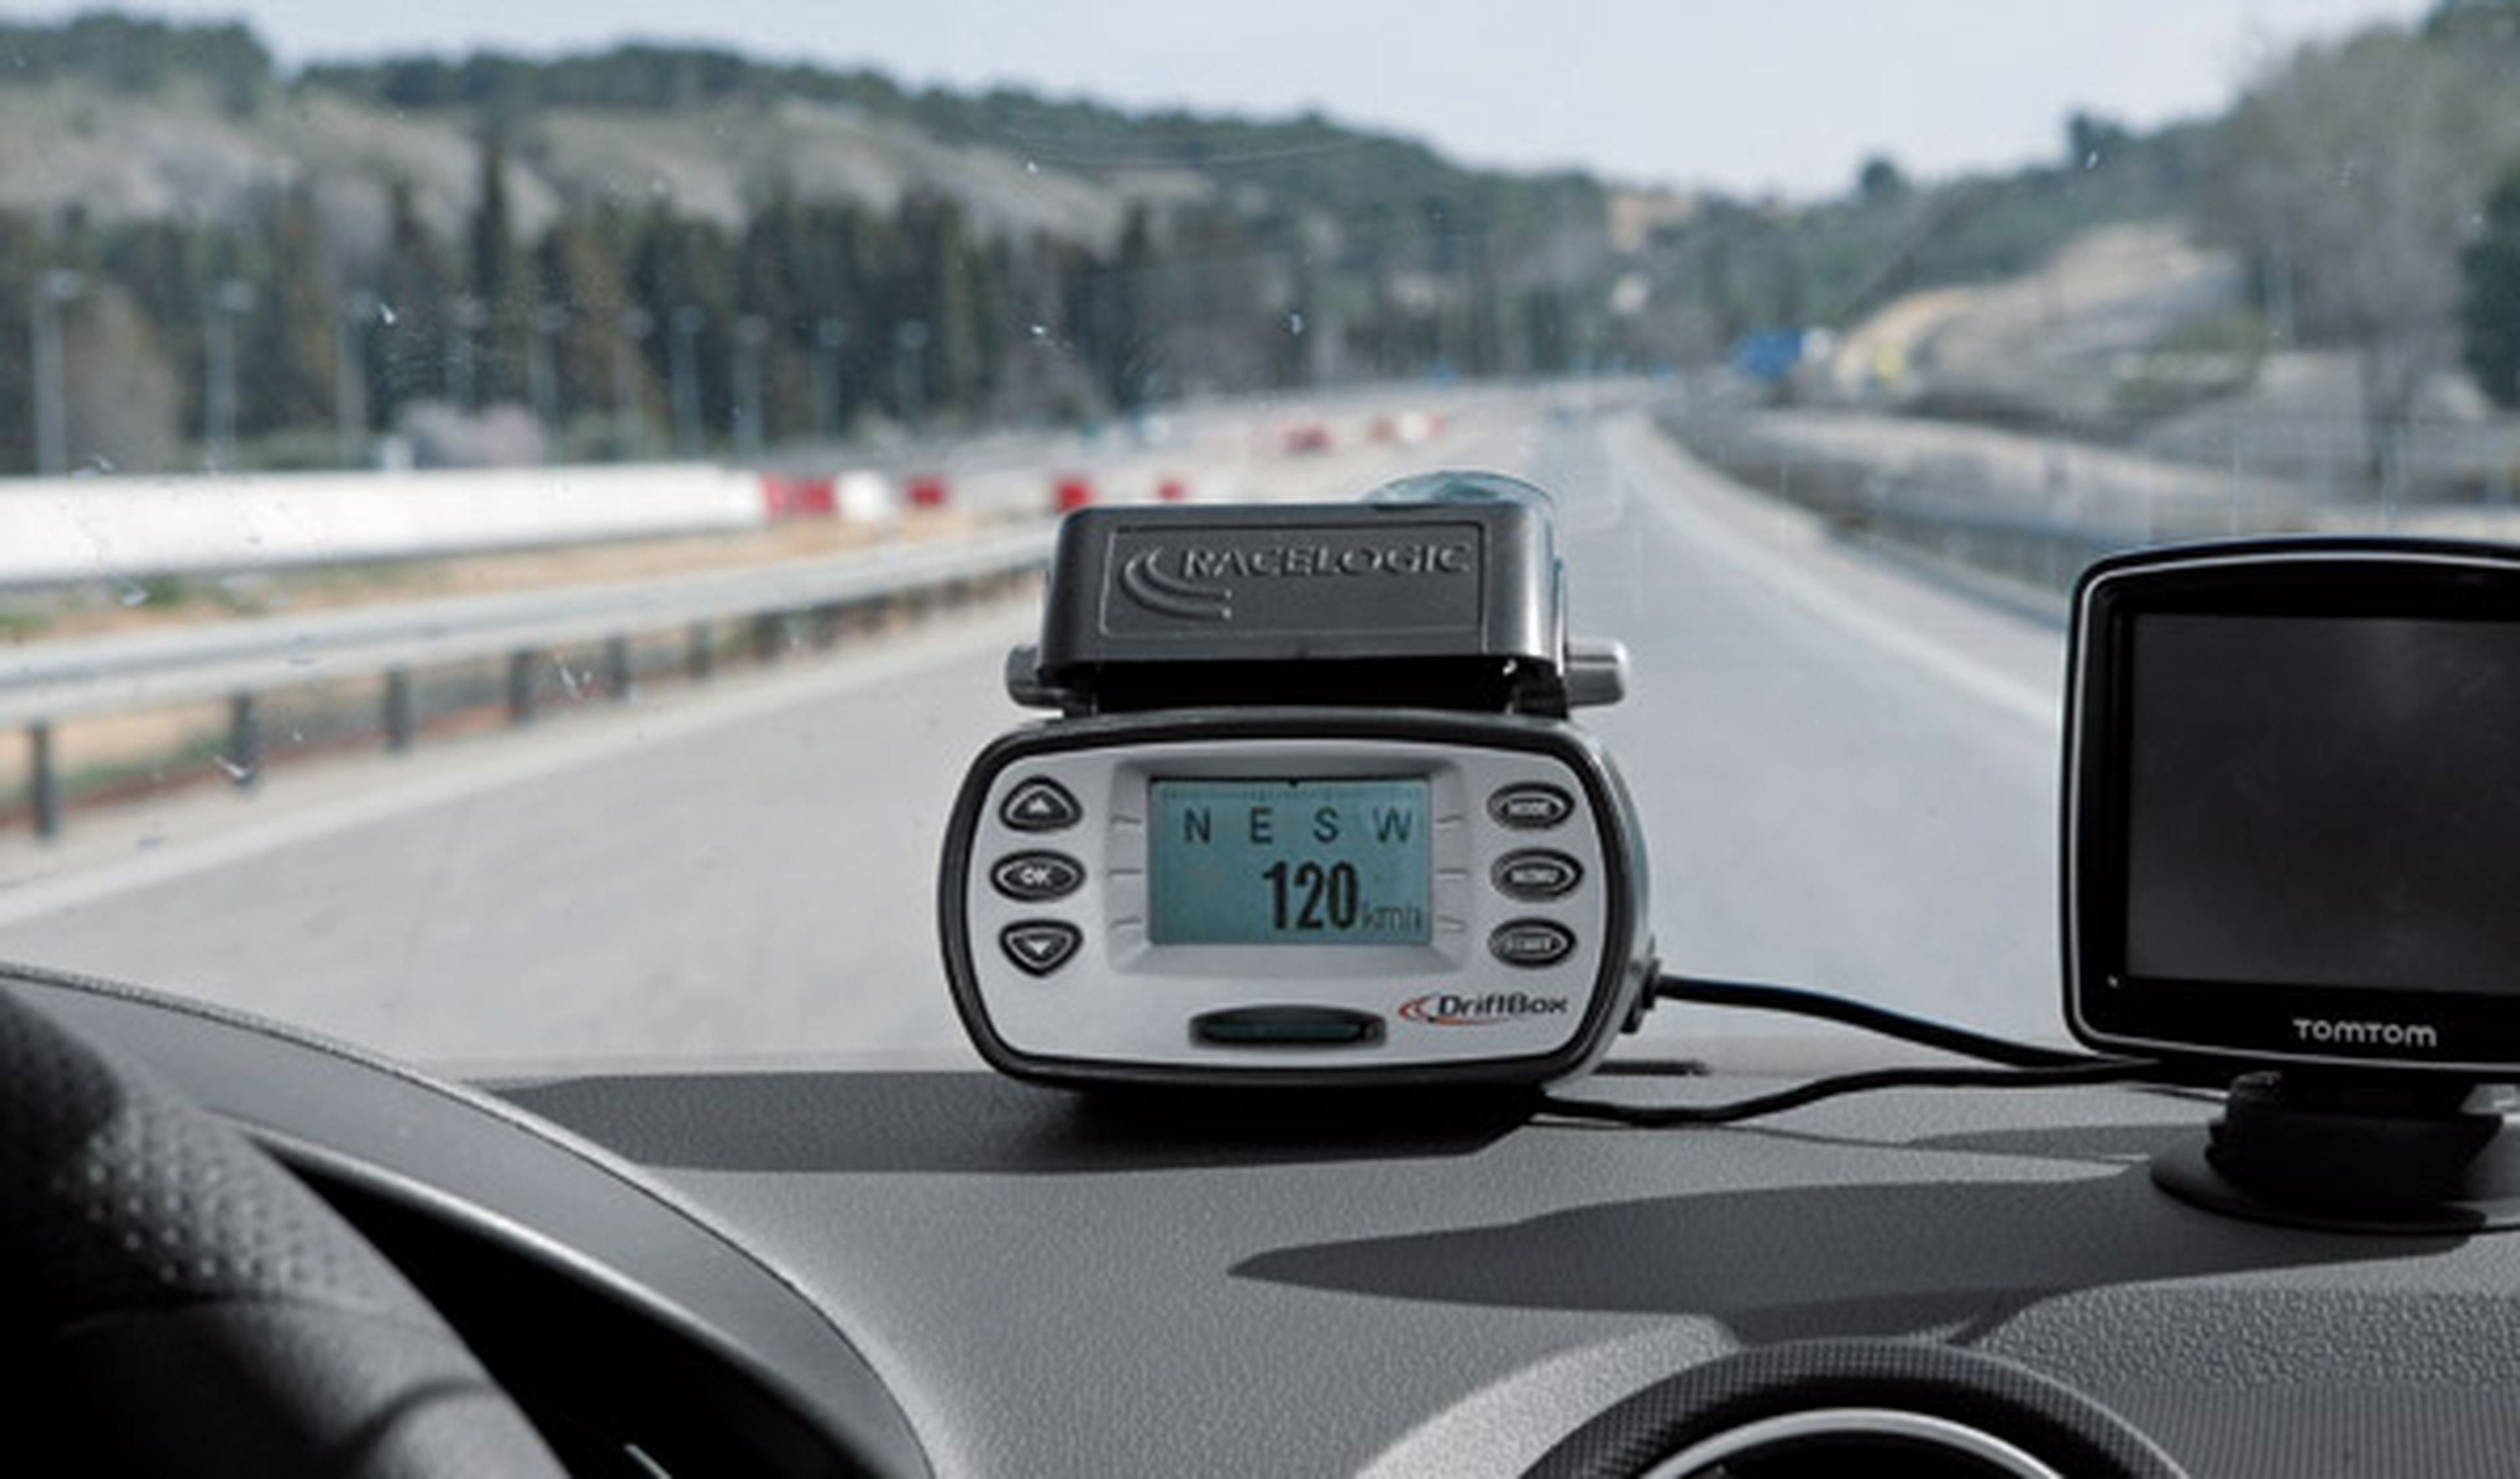 Prueba de consumo a 110 km/h: ¿sirve para algo el nuevo límite de velocidad?